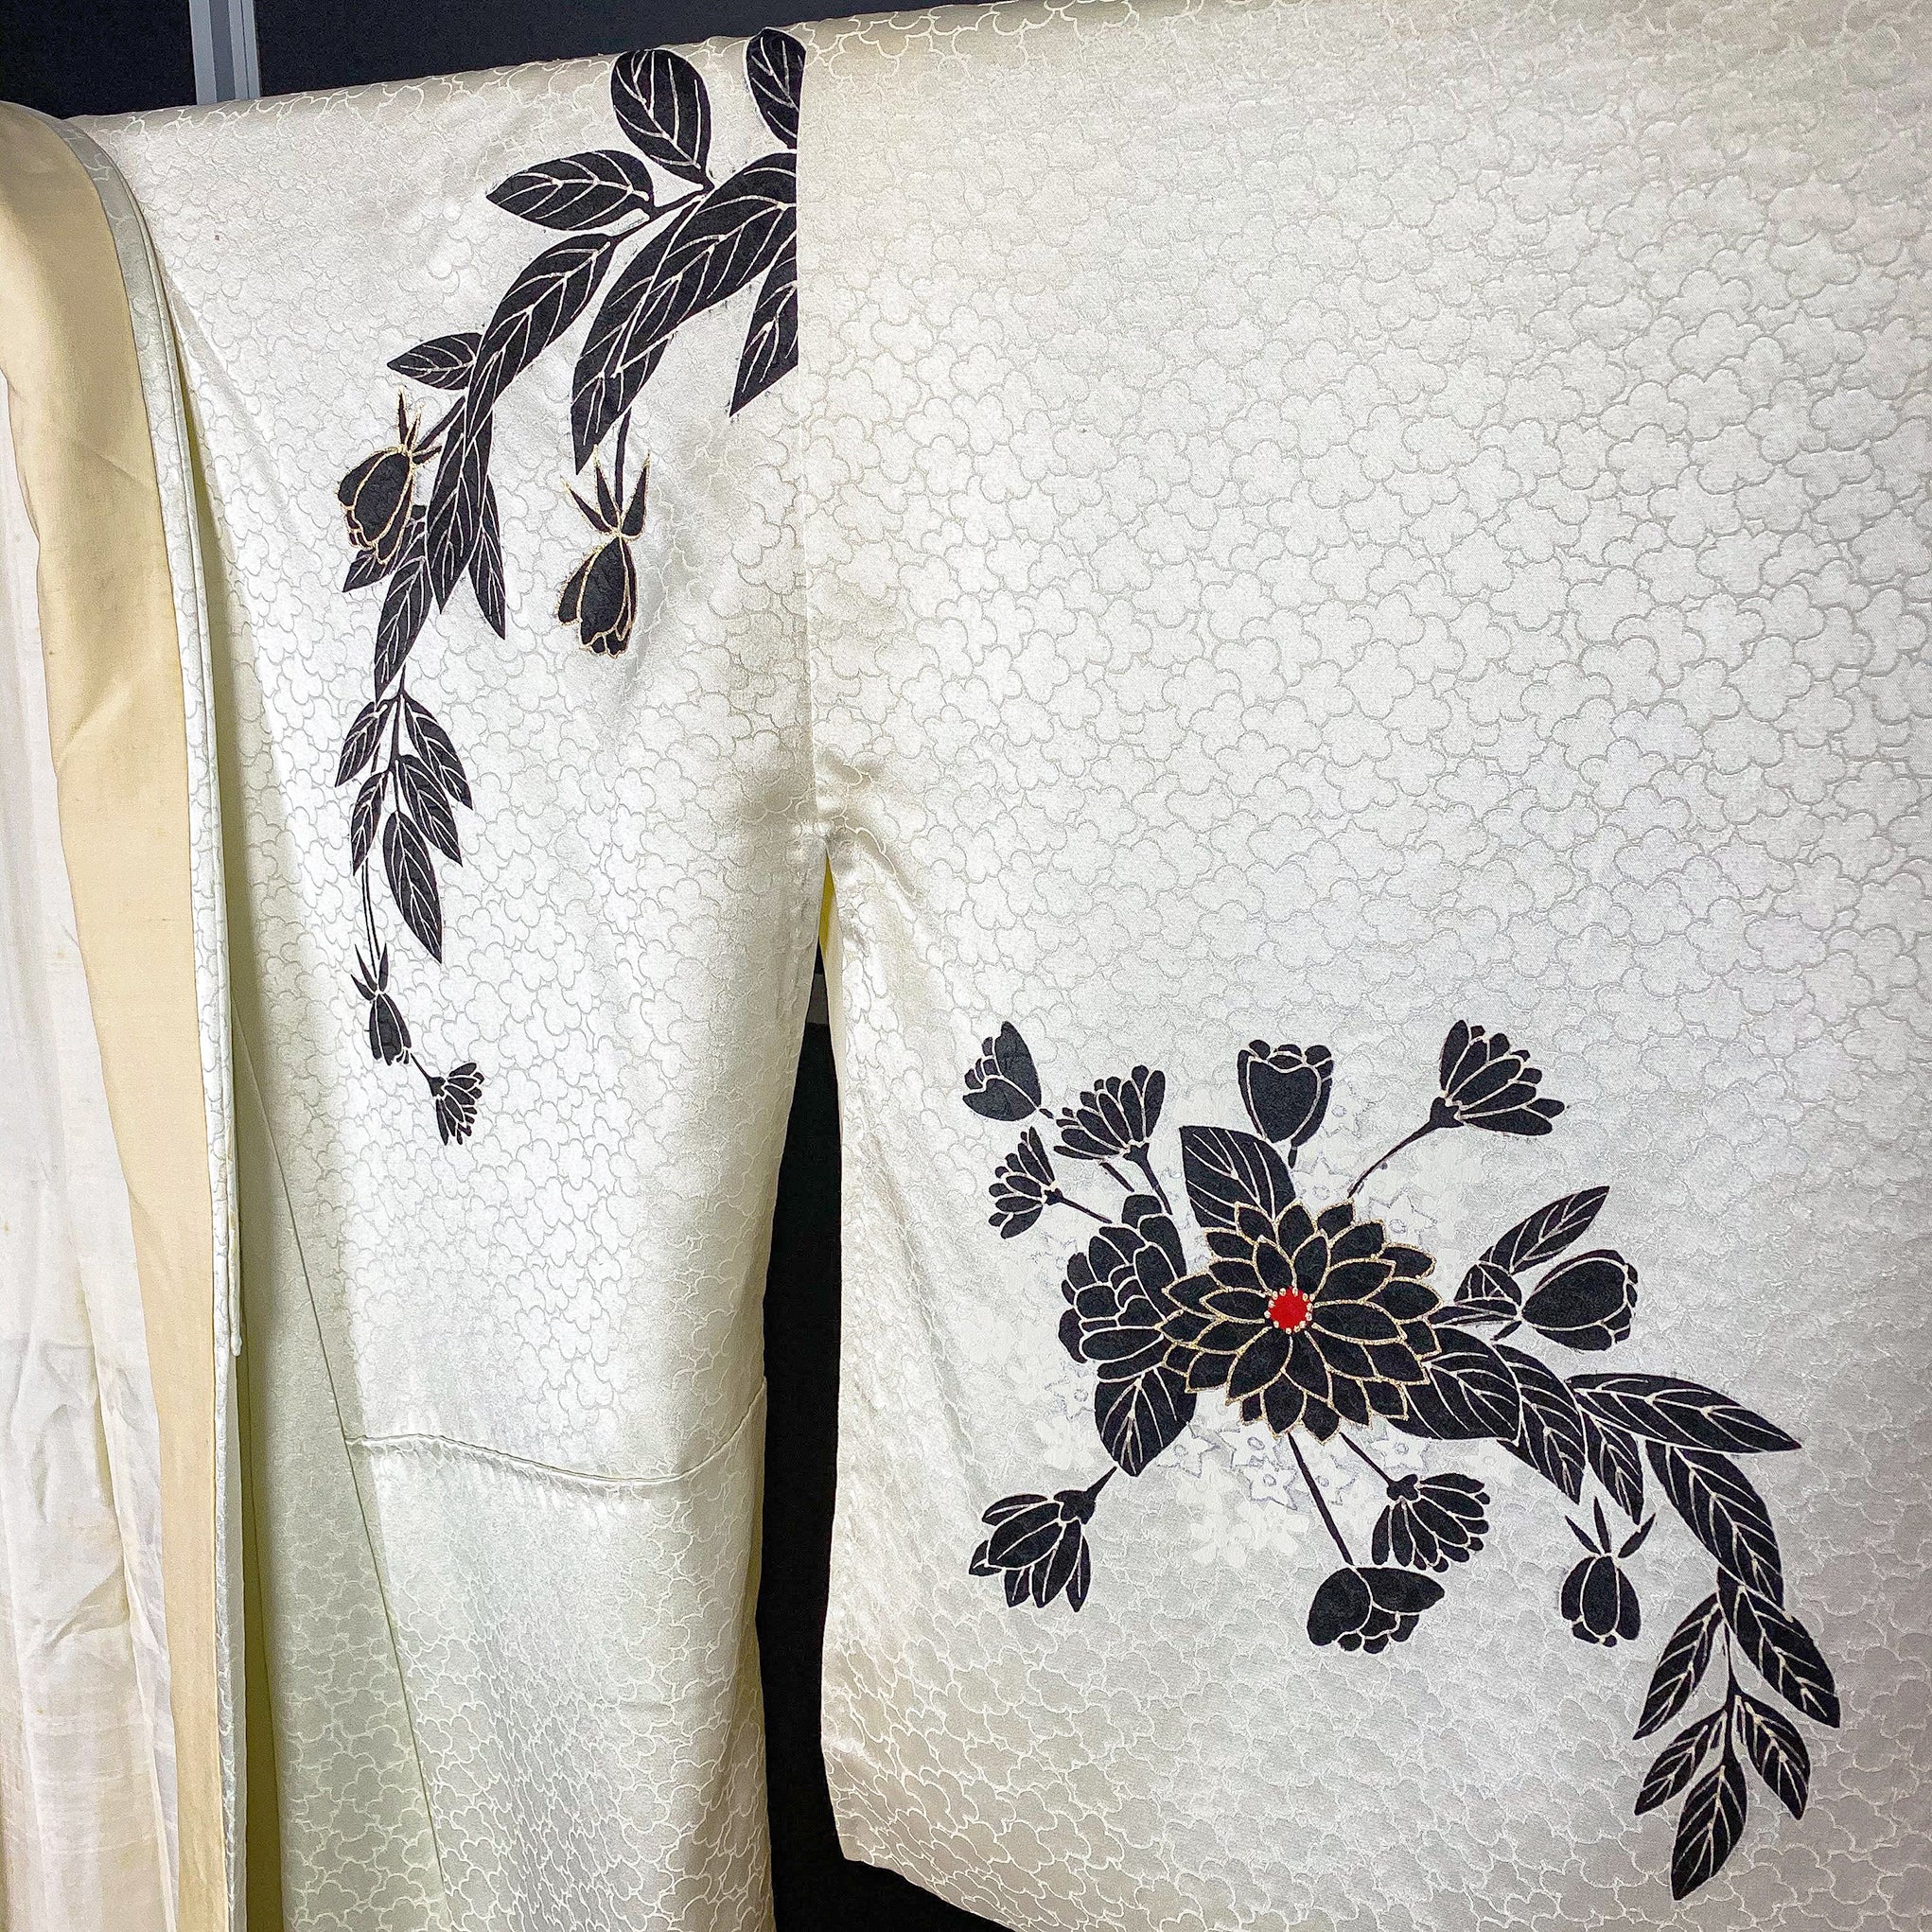 White Silky Kimono with Black Floral Print